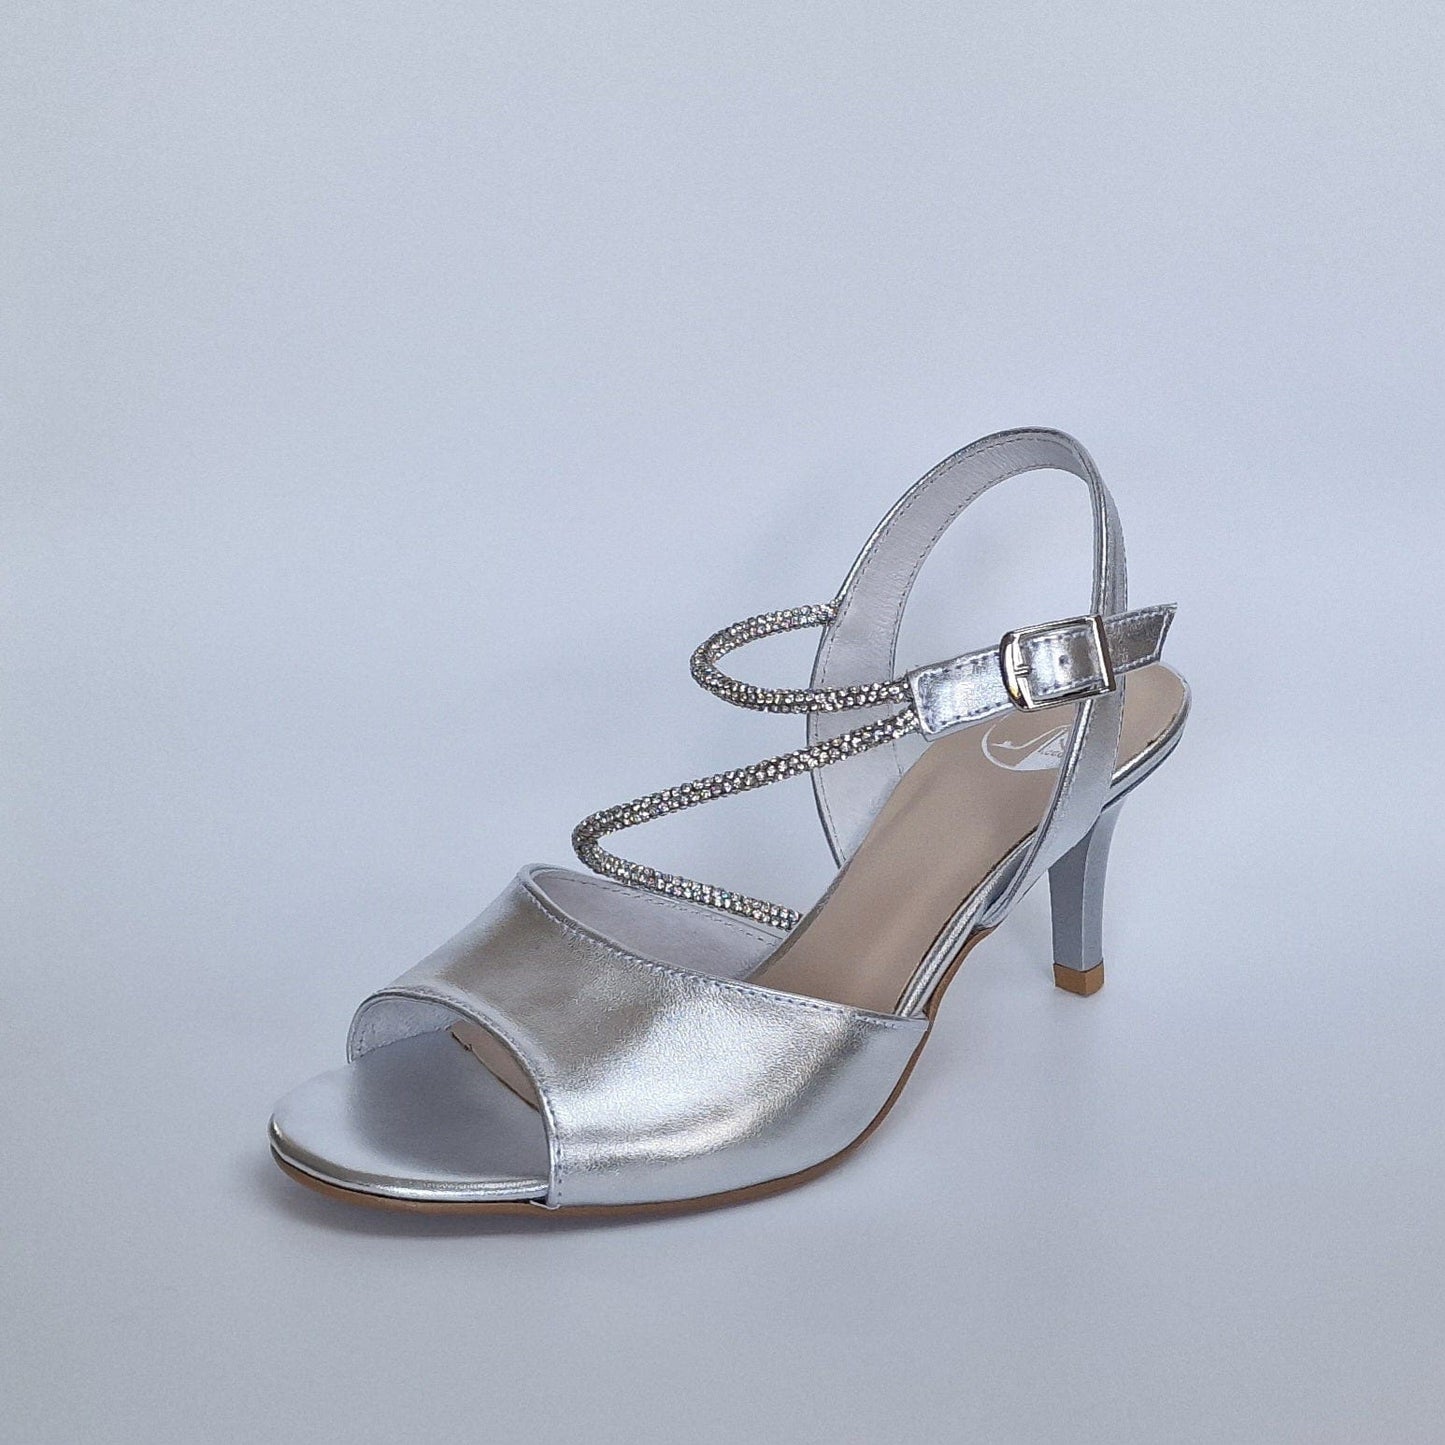 Kitten heel cross strap diamanté sandals in silver leather